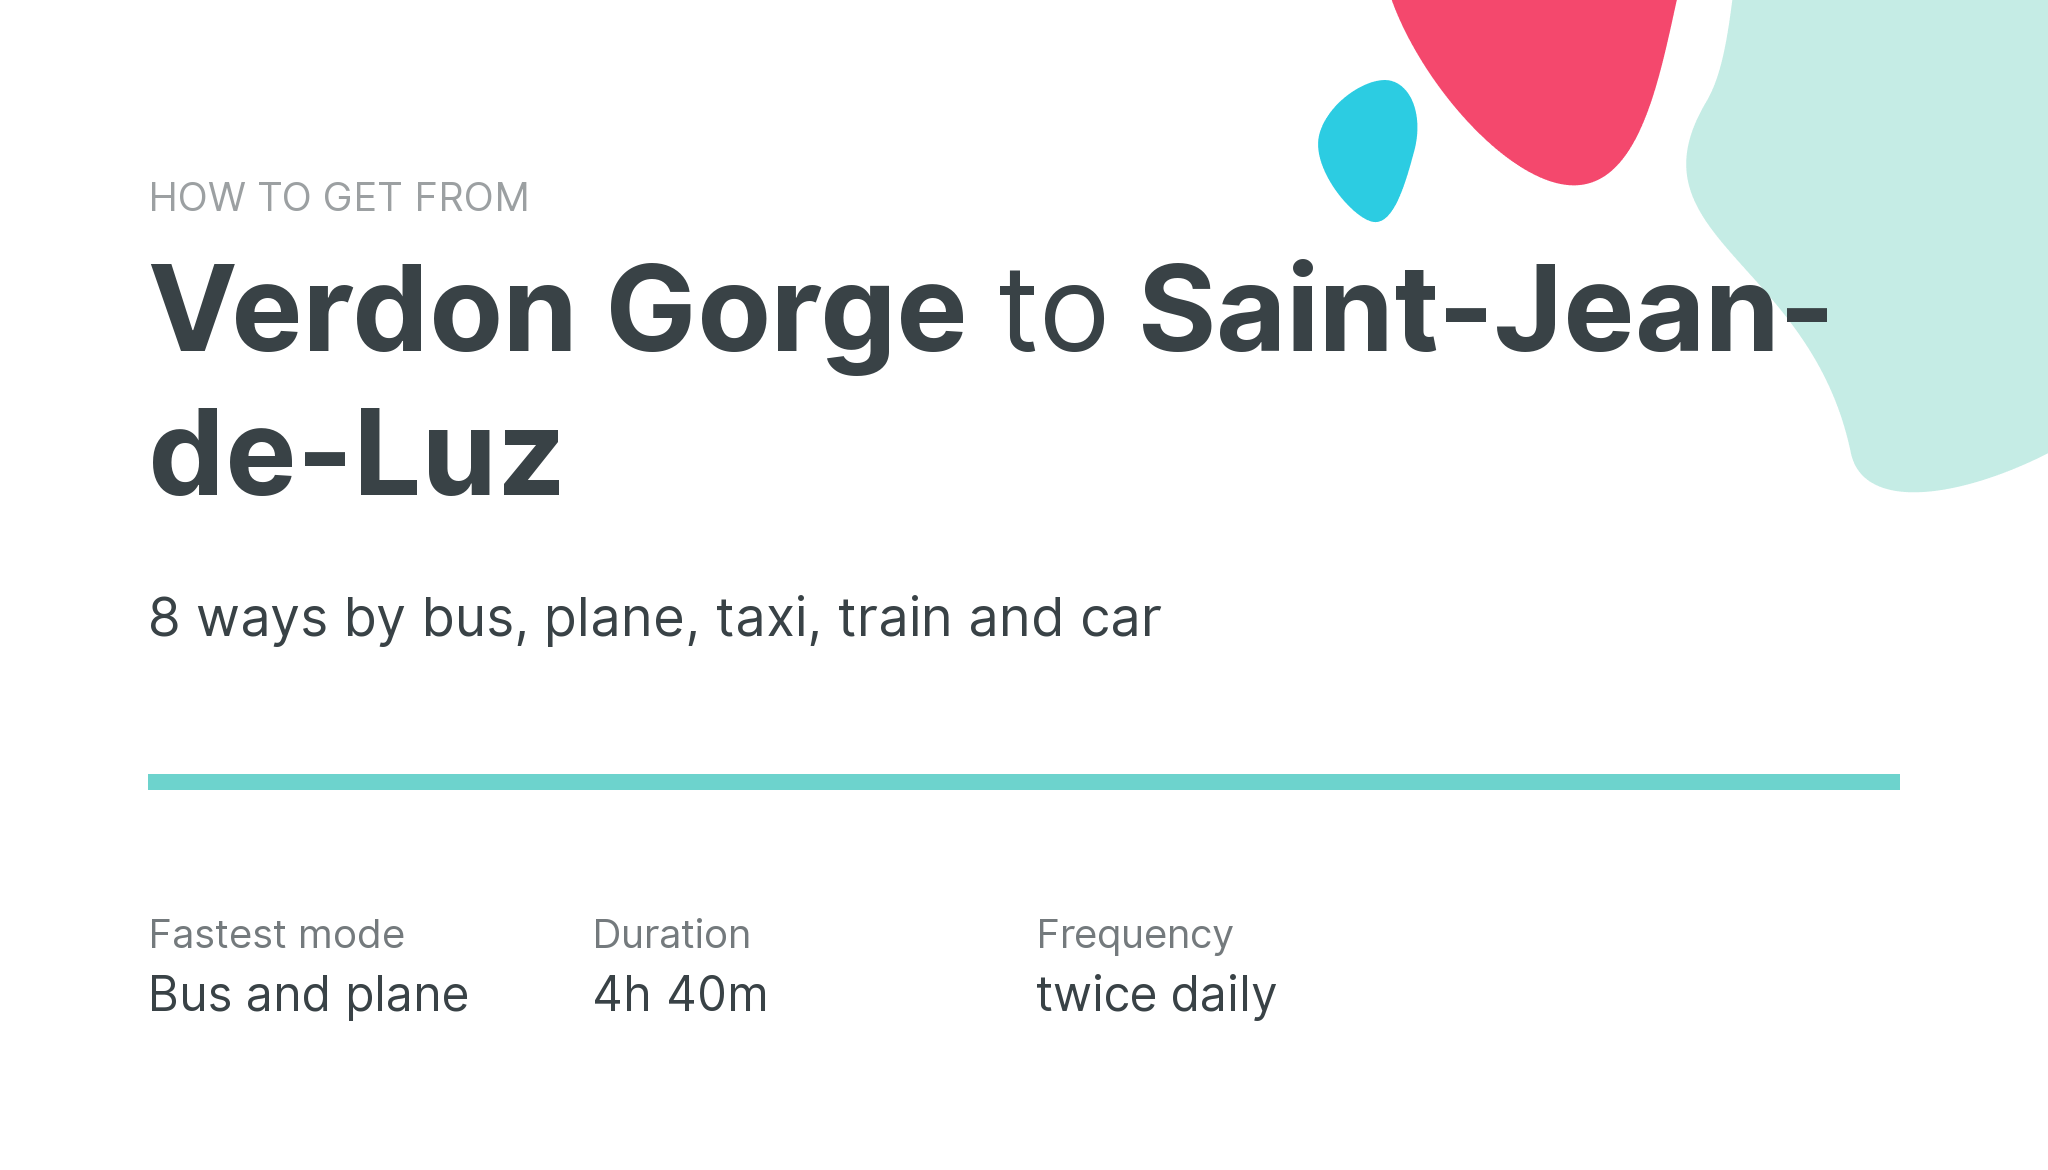 How do I get from Verdon Gorge to Saint-Jean-de-Luz